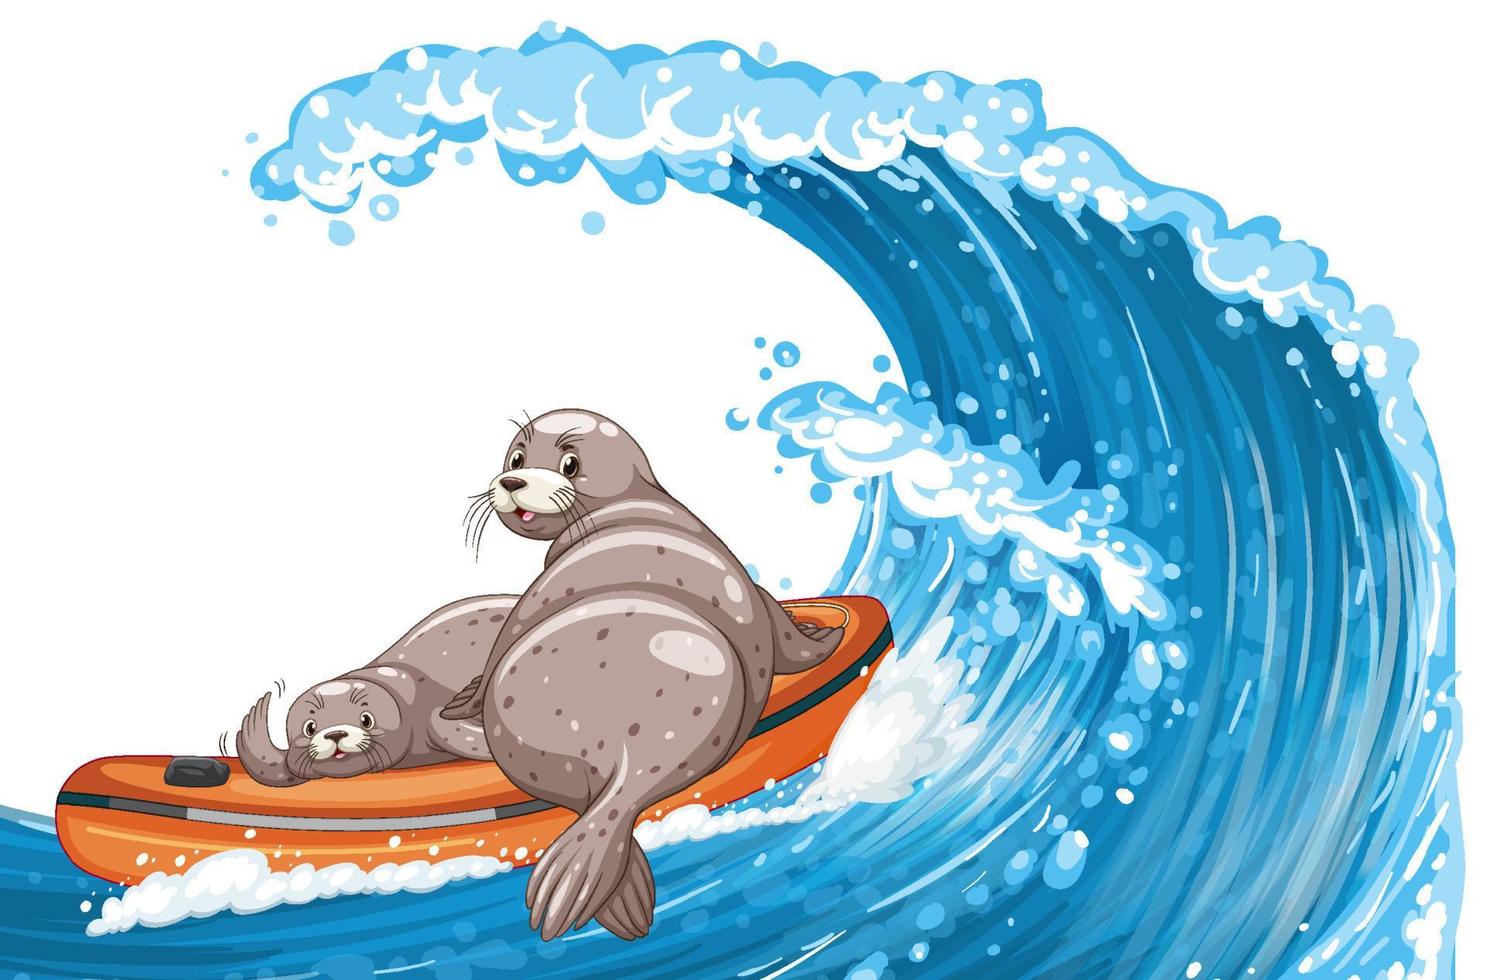 zeehonden in opblaasbare boot in cartoonstijl vector